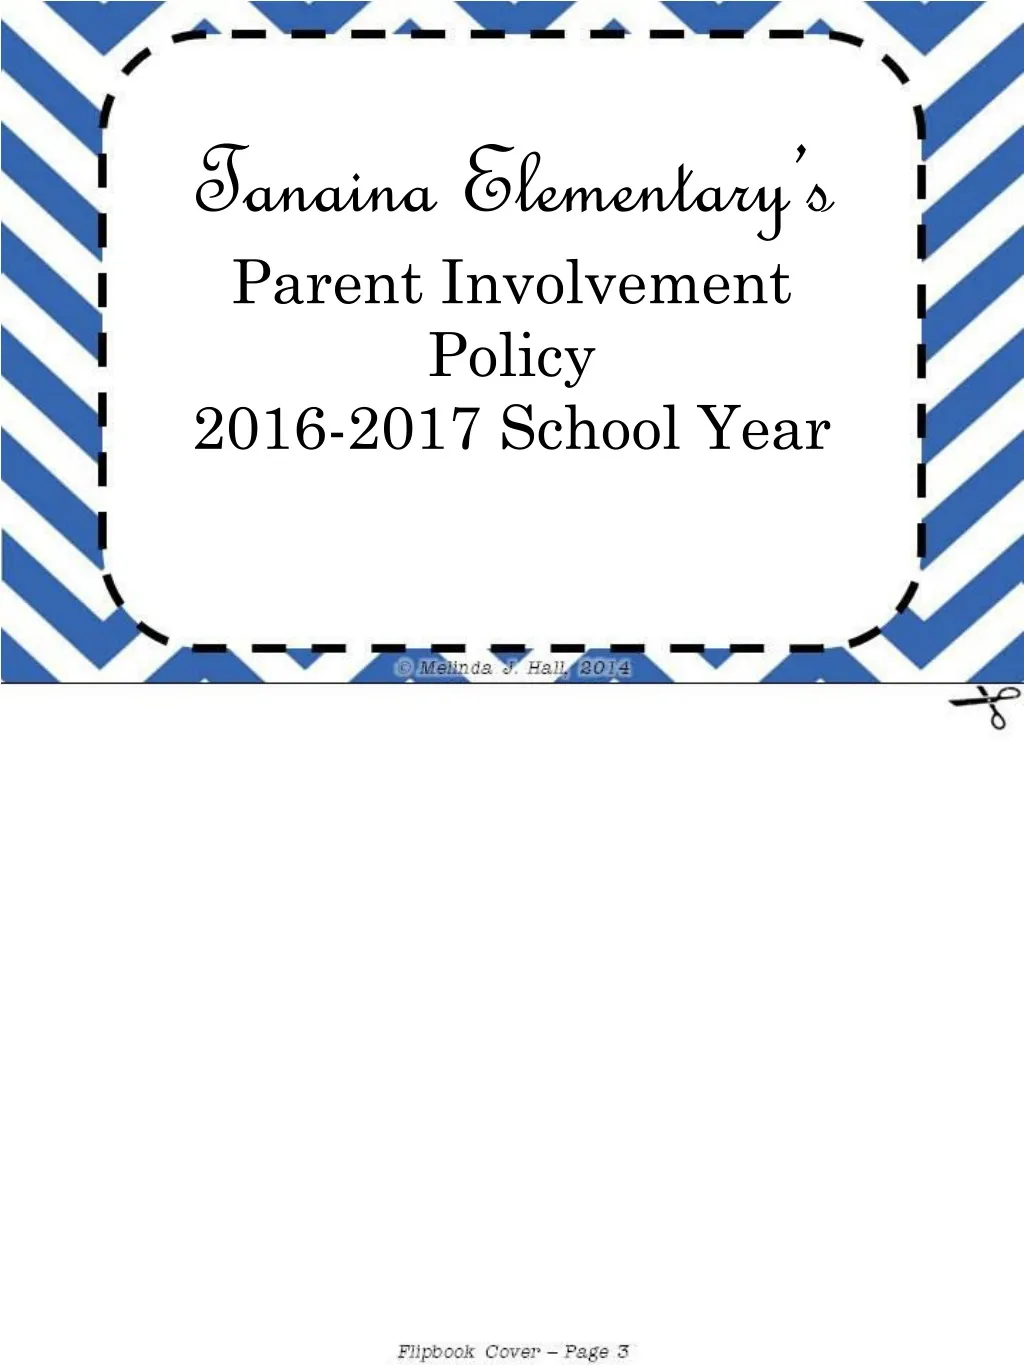 tanaina elementary s parent involvement policy